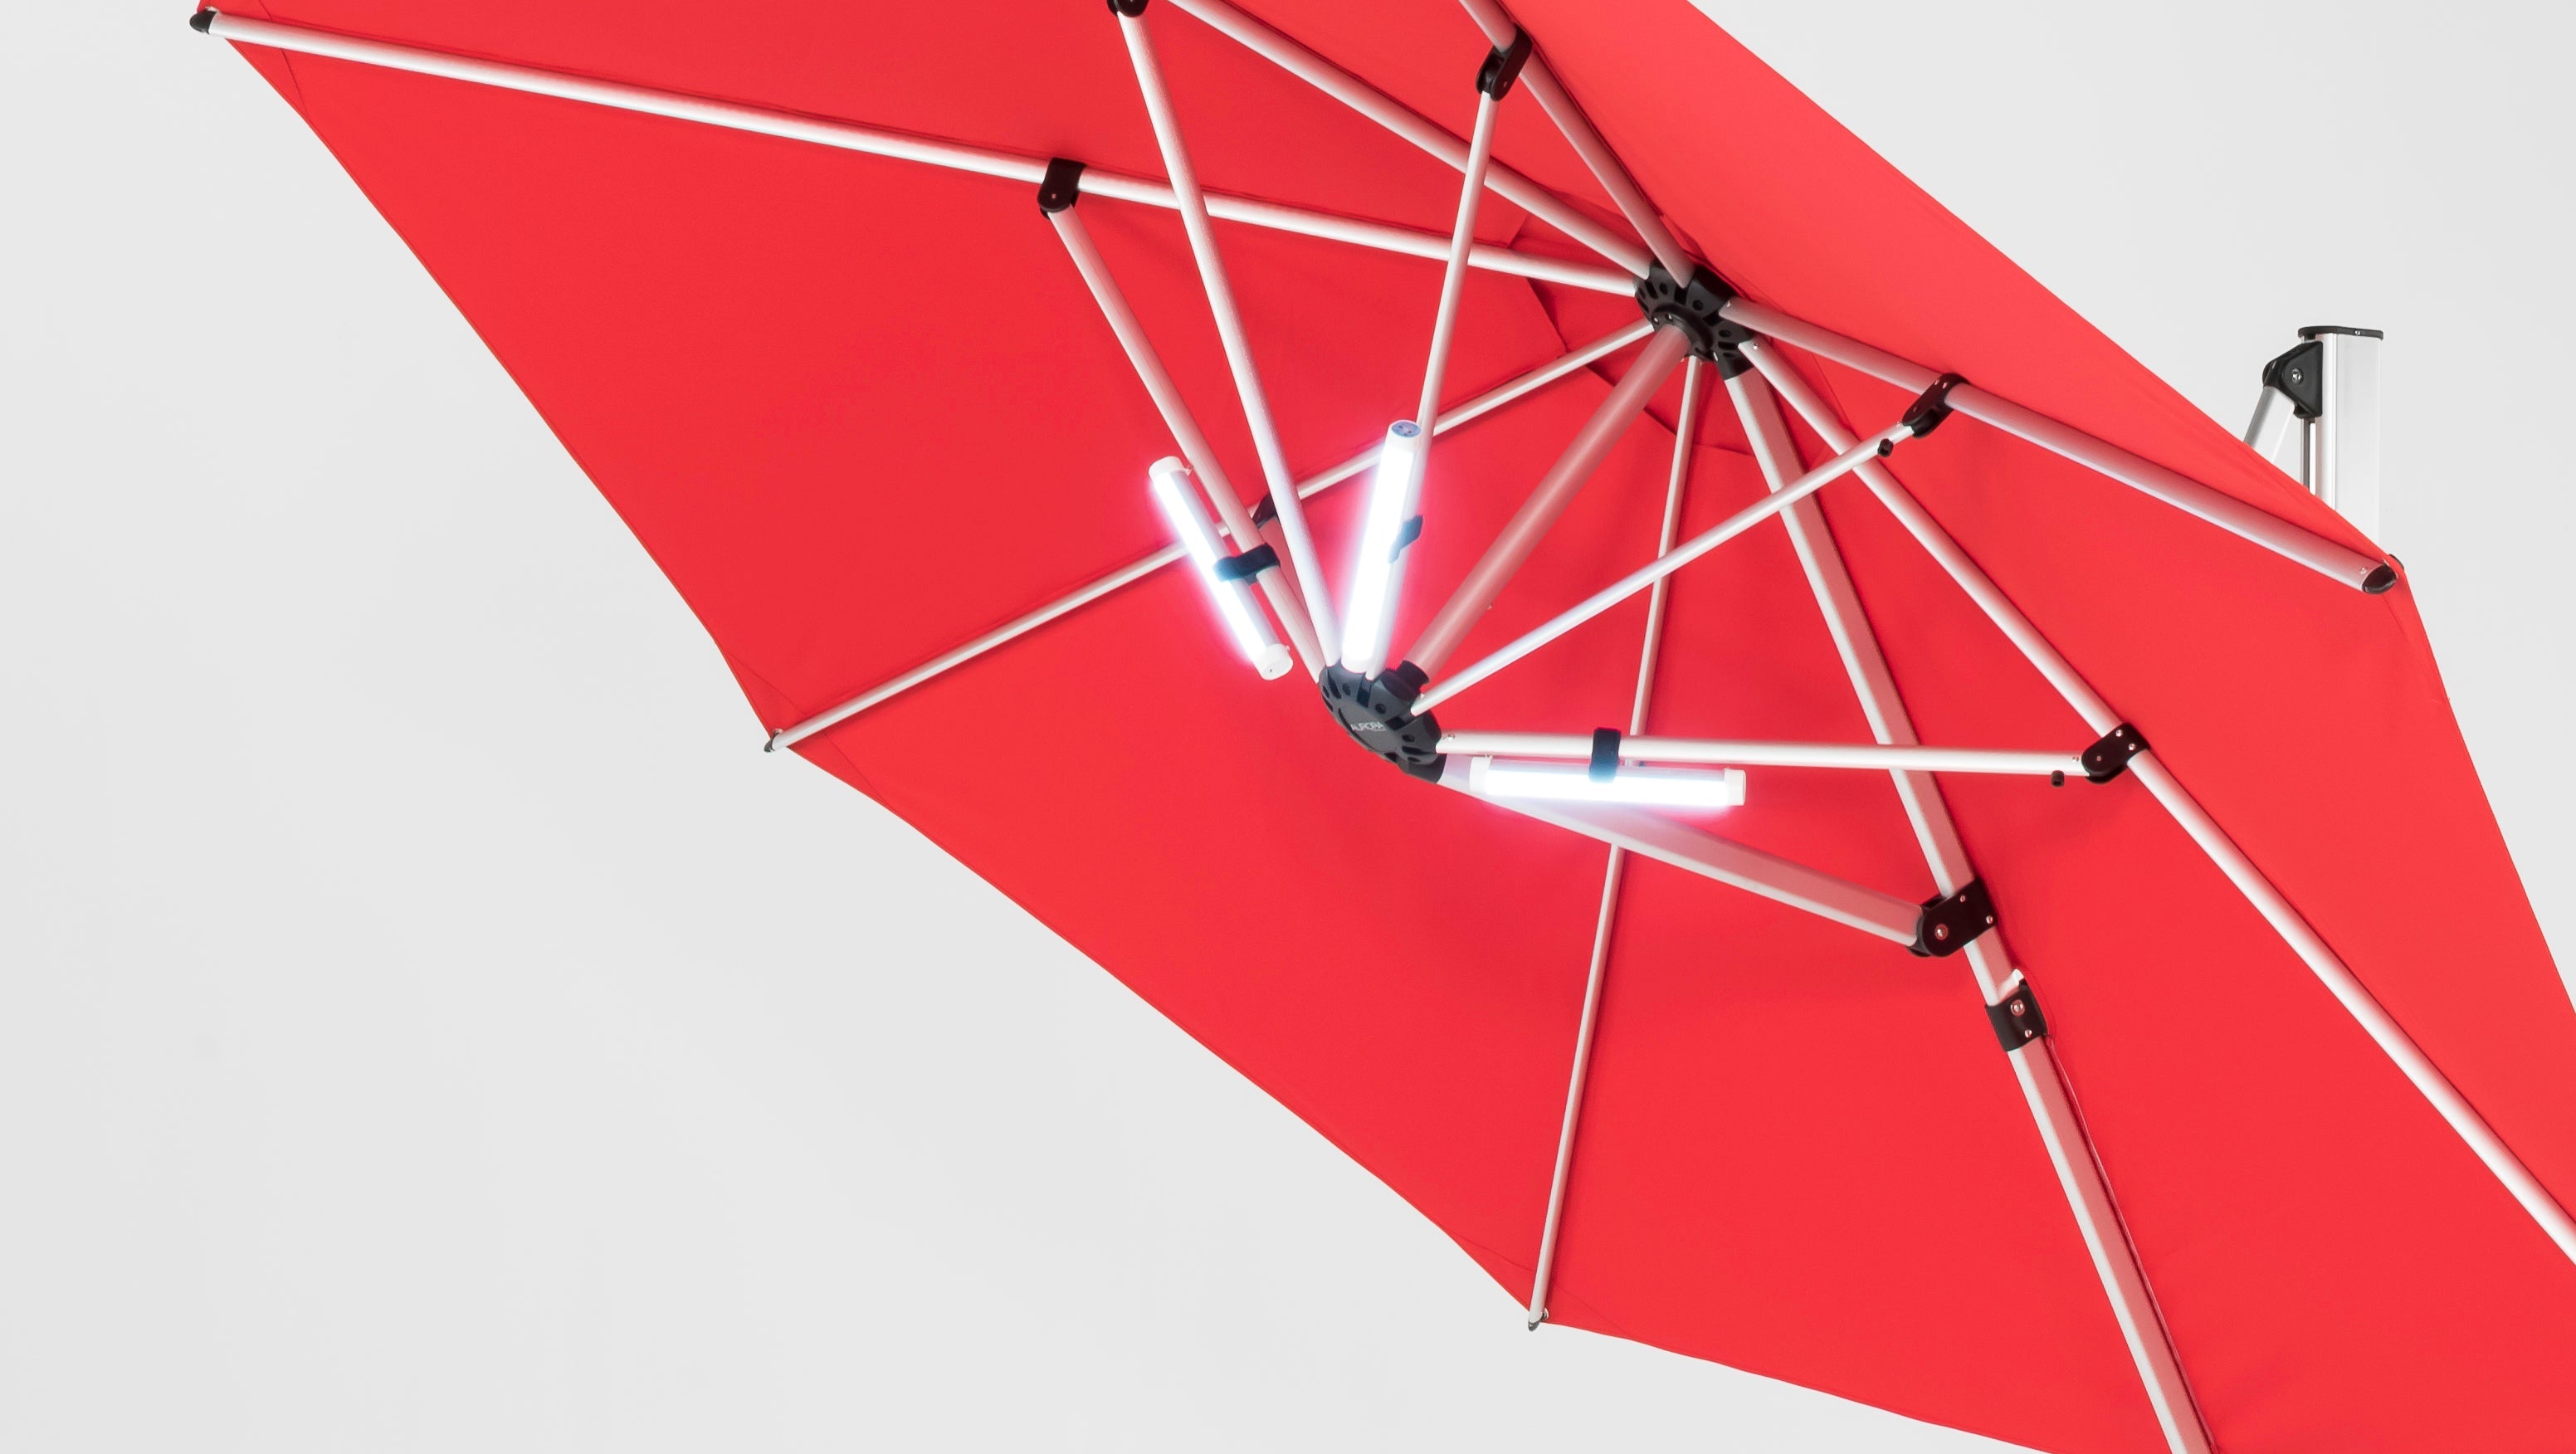 11F Octagonal Aurora Premium Aluminum Cantilever Umbrella by Frankford